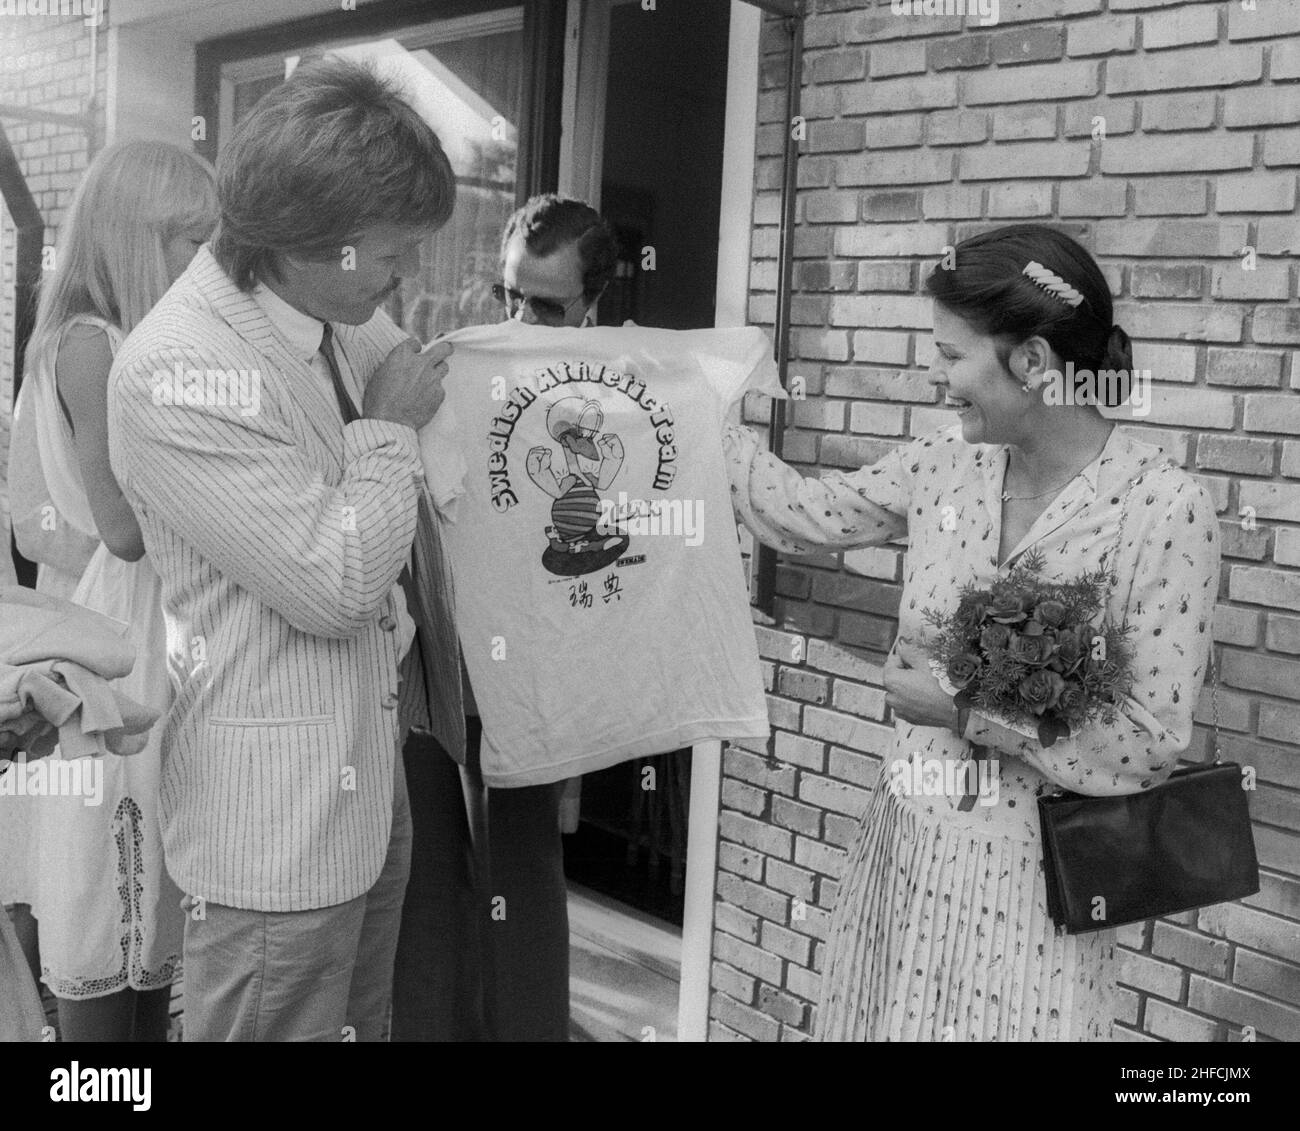 PEKING 1981-01-01Christer Garpenborg der schwedische Leichtathletik-Athlet überreicht bei einem`s Empfang in Peking ein T-Shirt mit dem Maskottchen Lunken der schwedischen Nationalmannschaft an die schwedische Königin Silvia Stockfoto